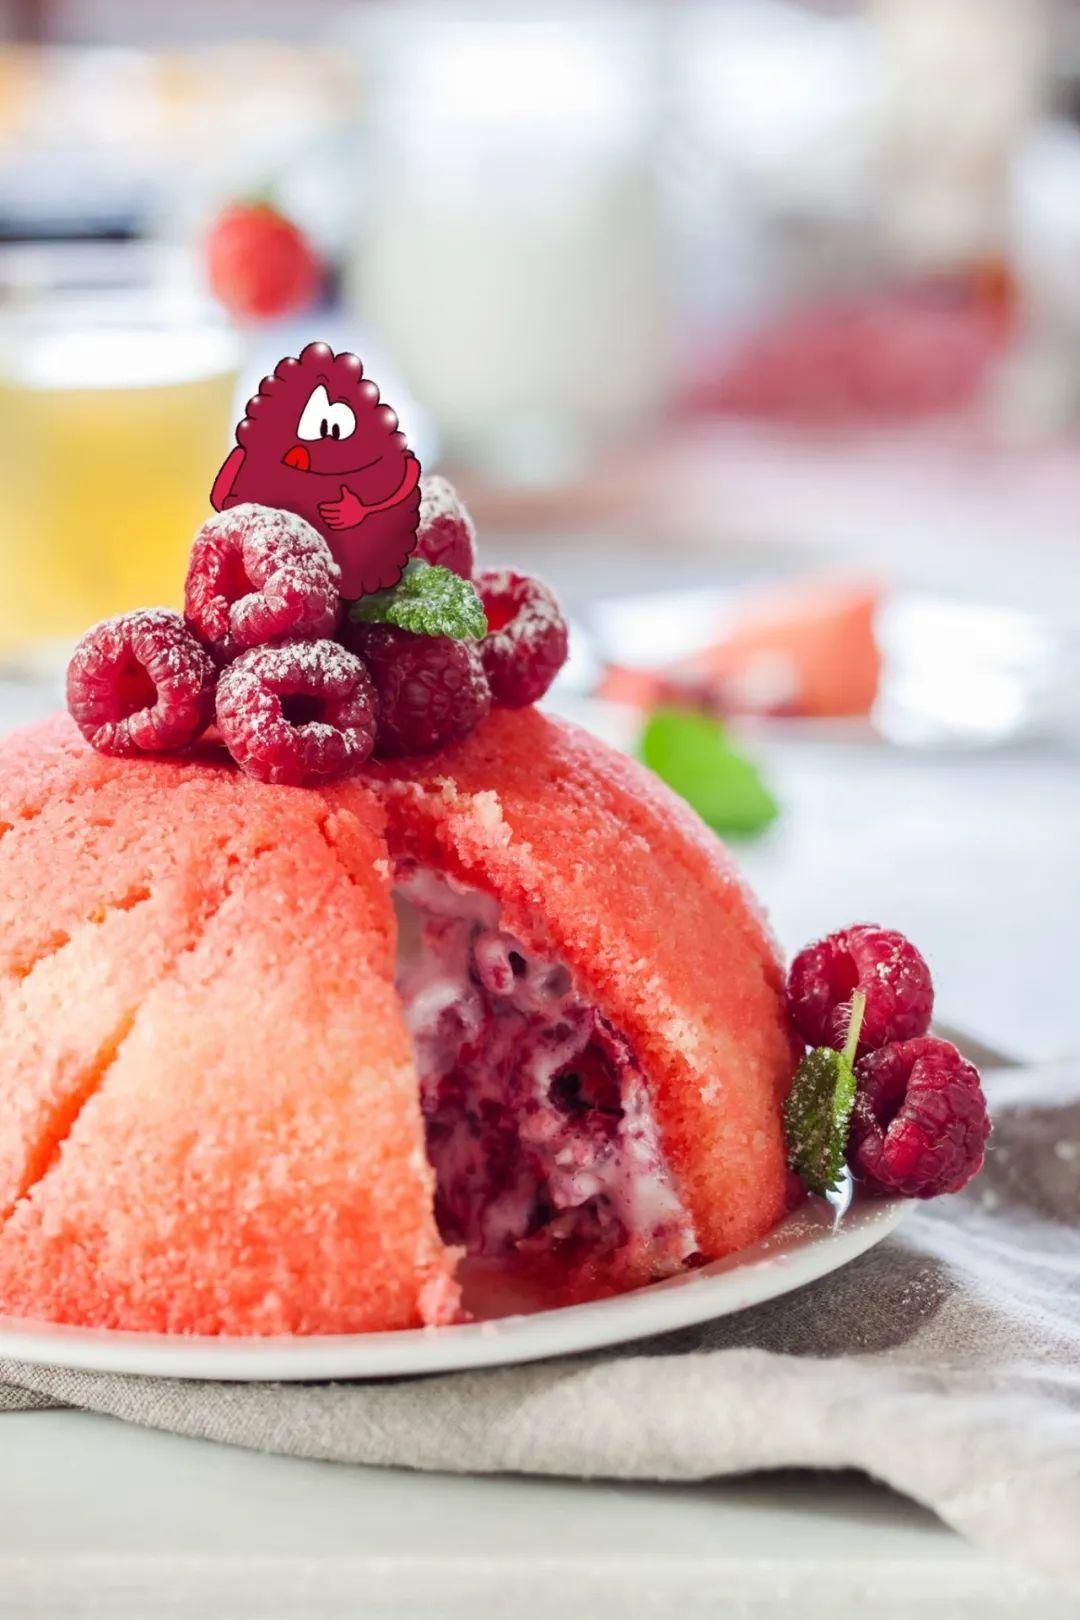 海绵蛋糕 覆盆子莓果 赛梦达gelato=双层惊喜的雪藏蛋糕于锅中融化